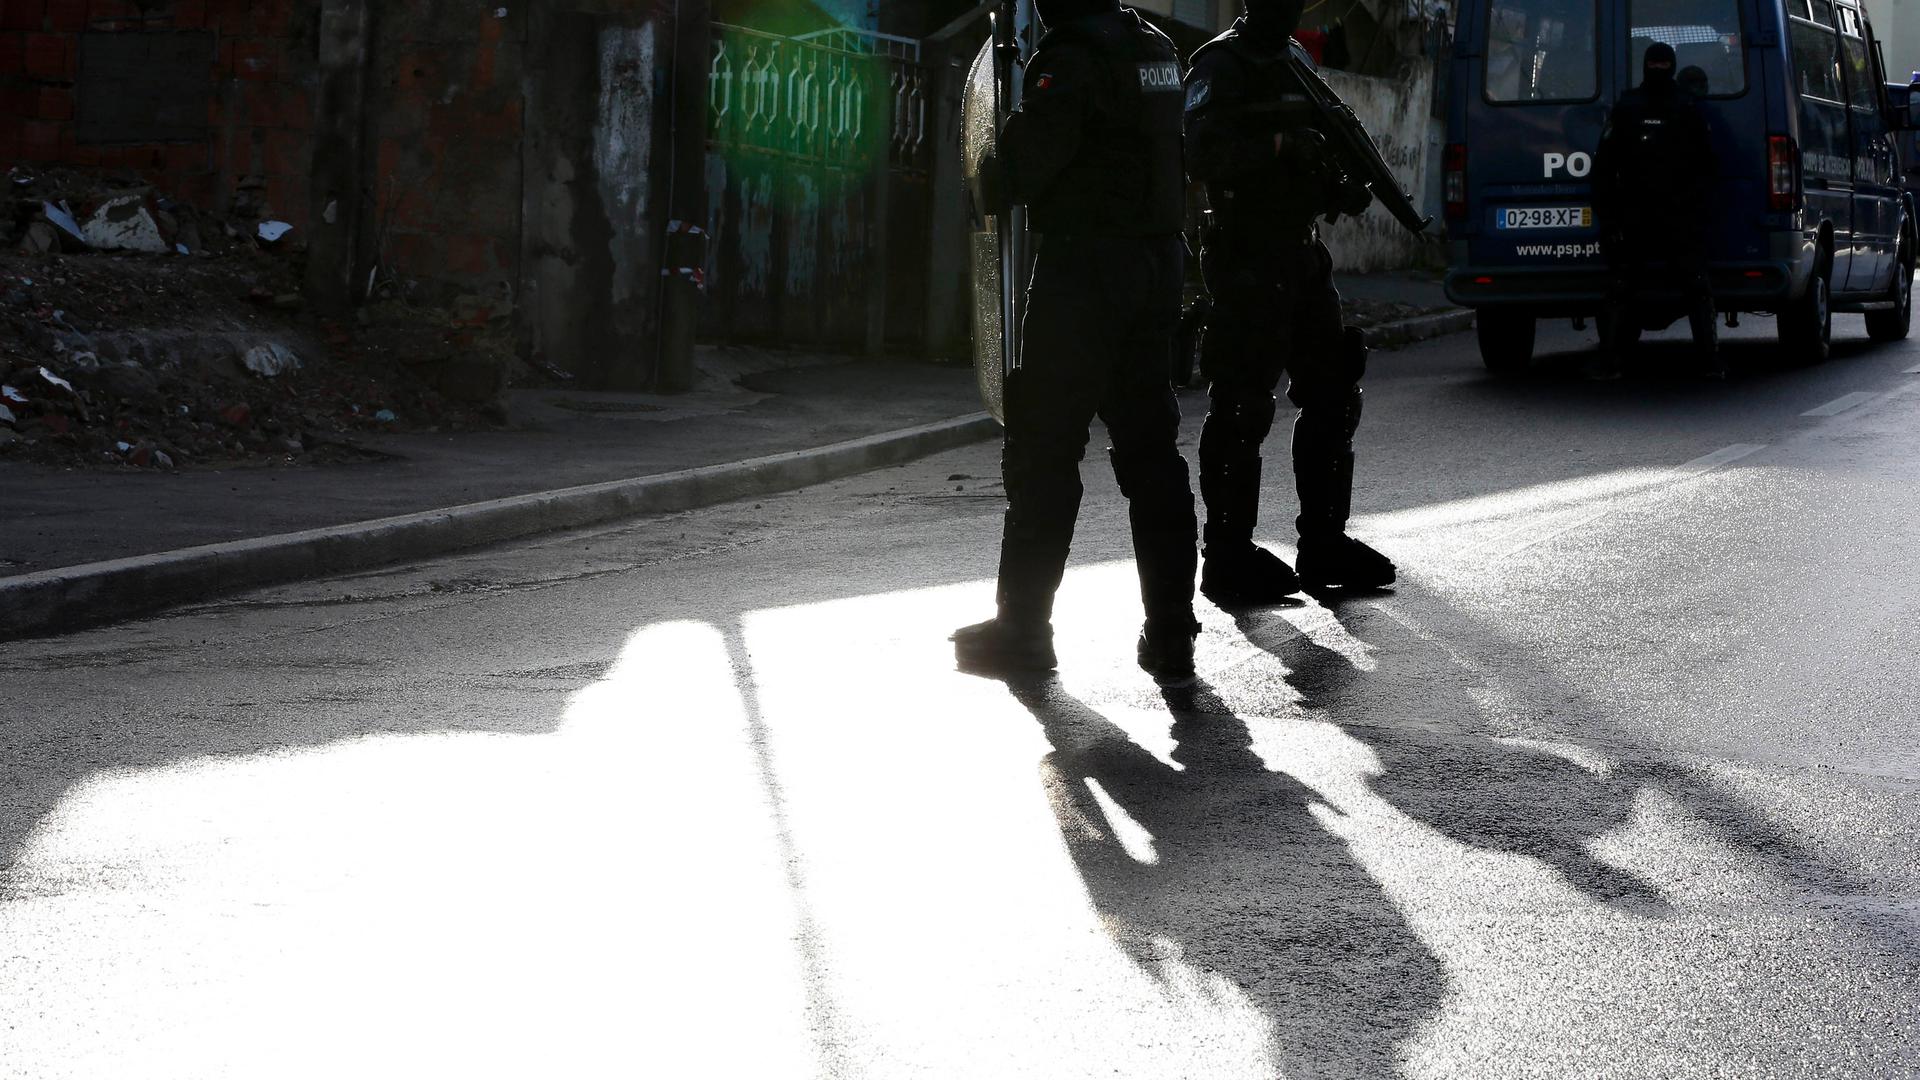 Dois elementos da polícia durante um operação de combate ao tráfico de estupefacientes em 2014, em Portugal.